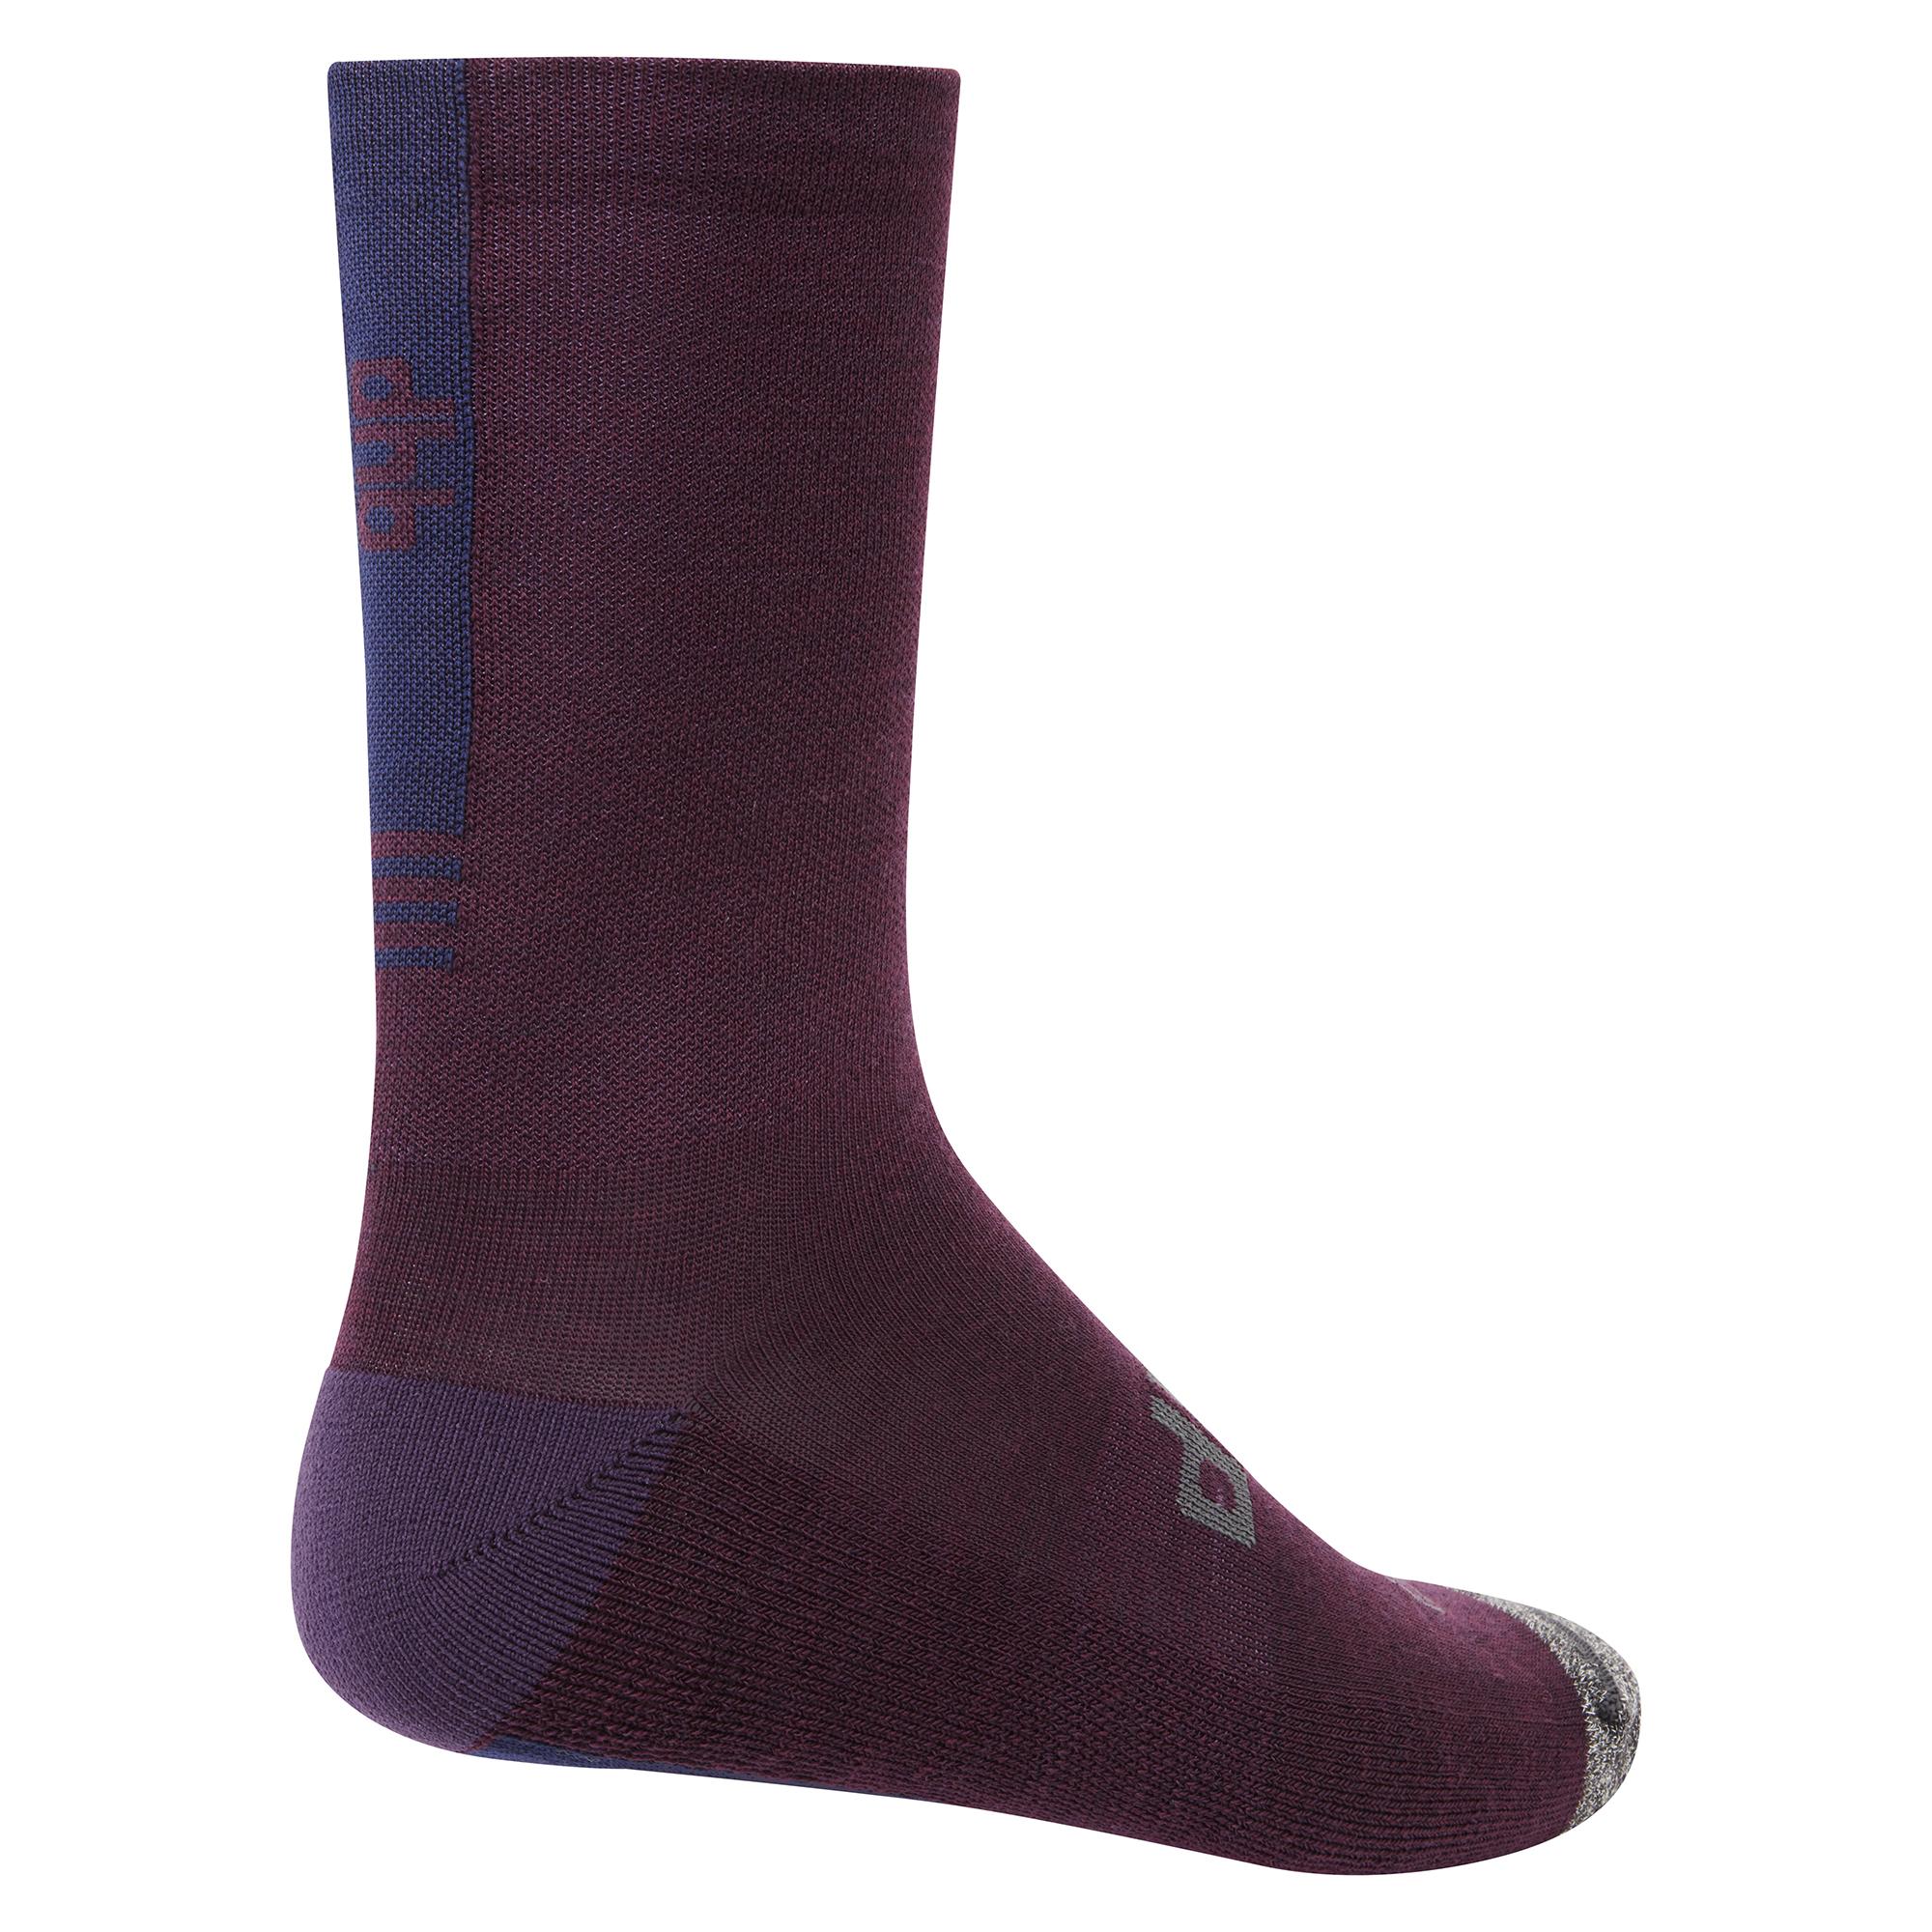 Dhb Aeron Winter Weight Merino Sock 2.0 - Purple